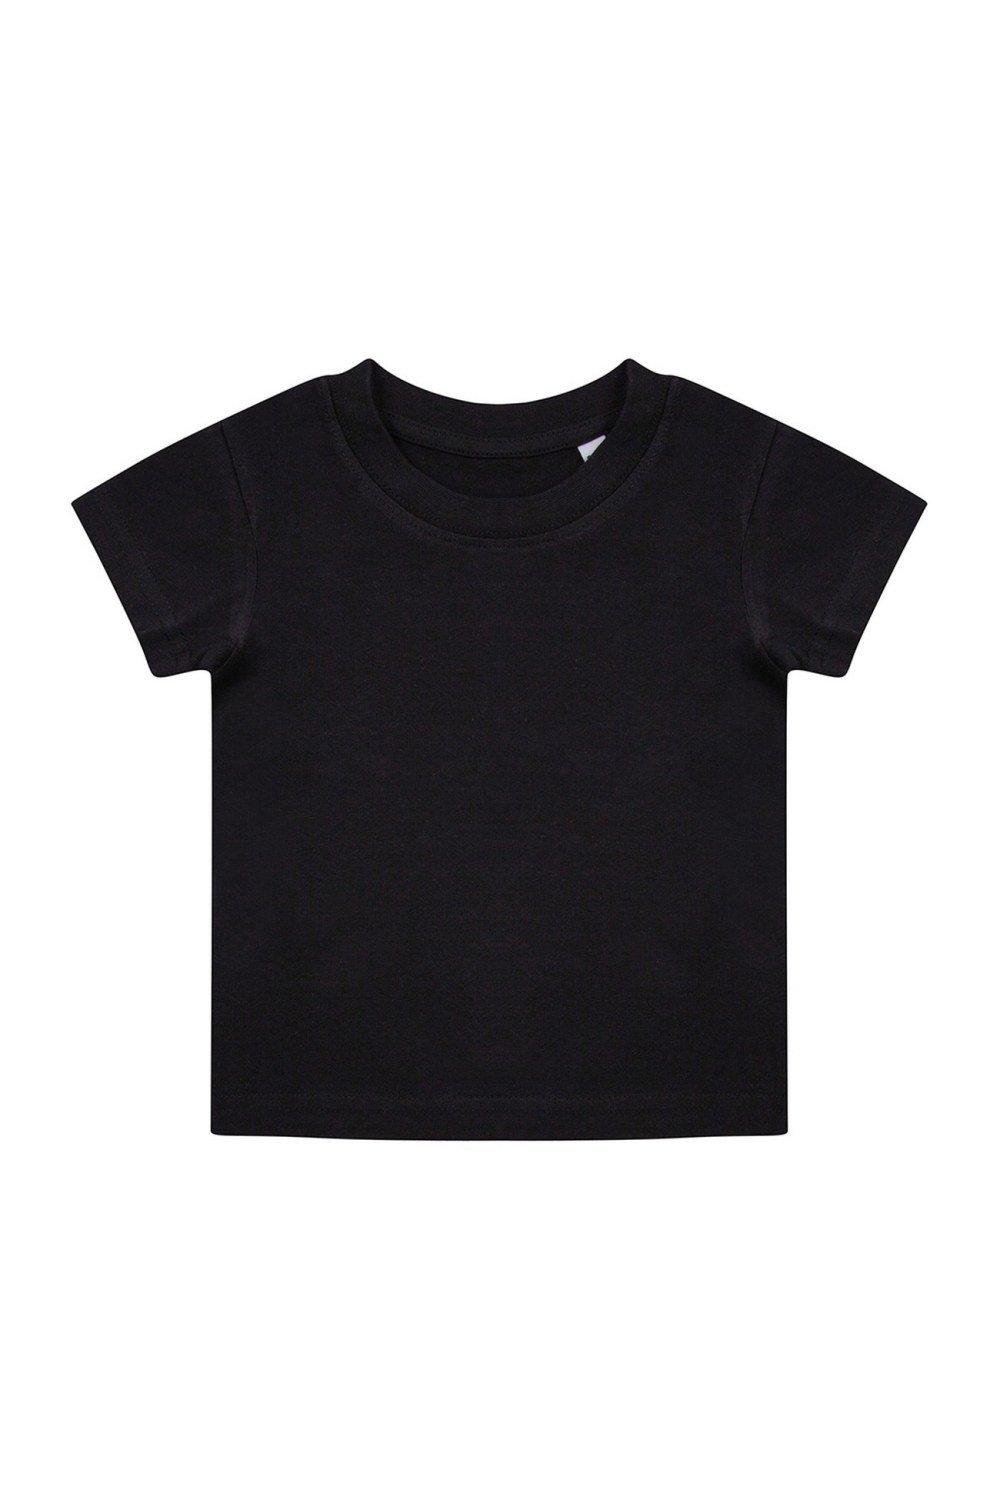 комплект одежды пижама для новорожденного 6 мес 62 68 см Органическая футболка Larkwood, черный